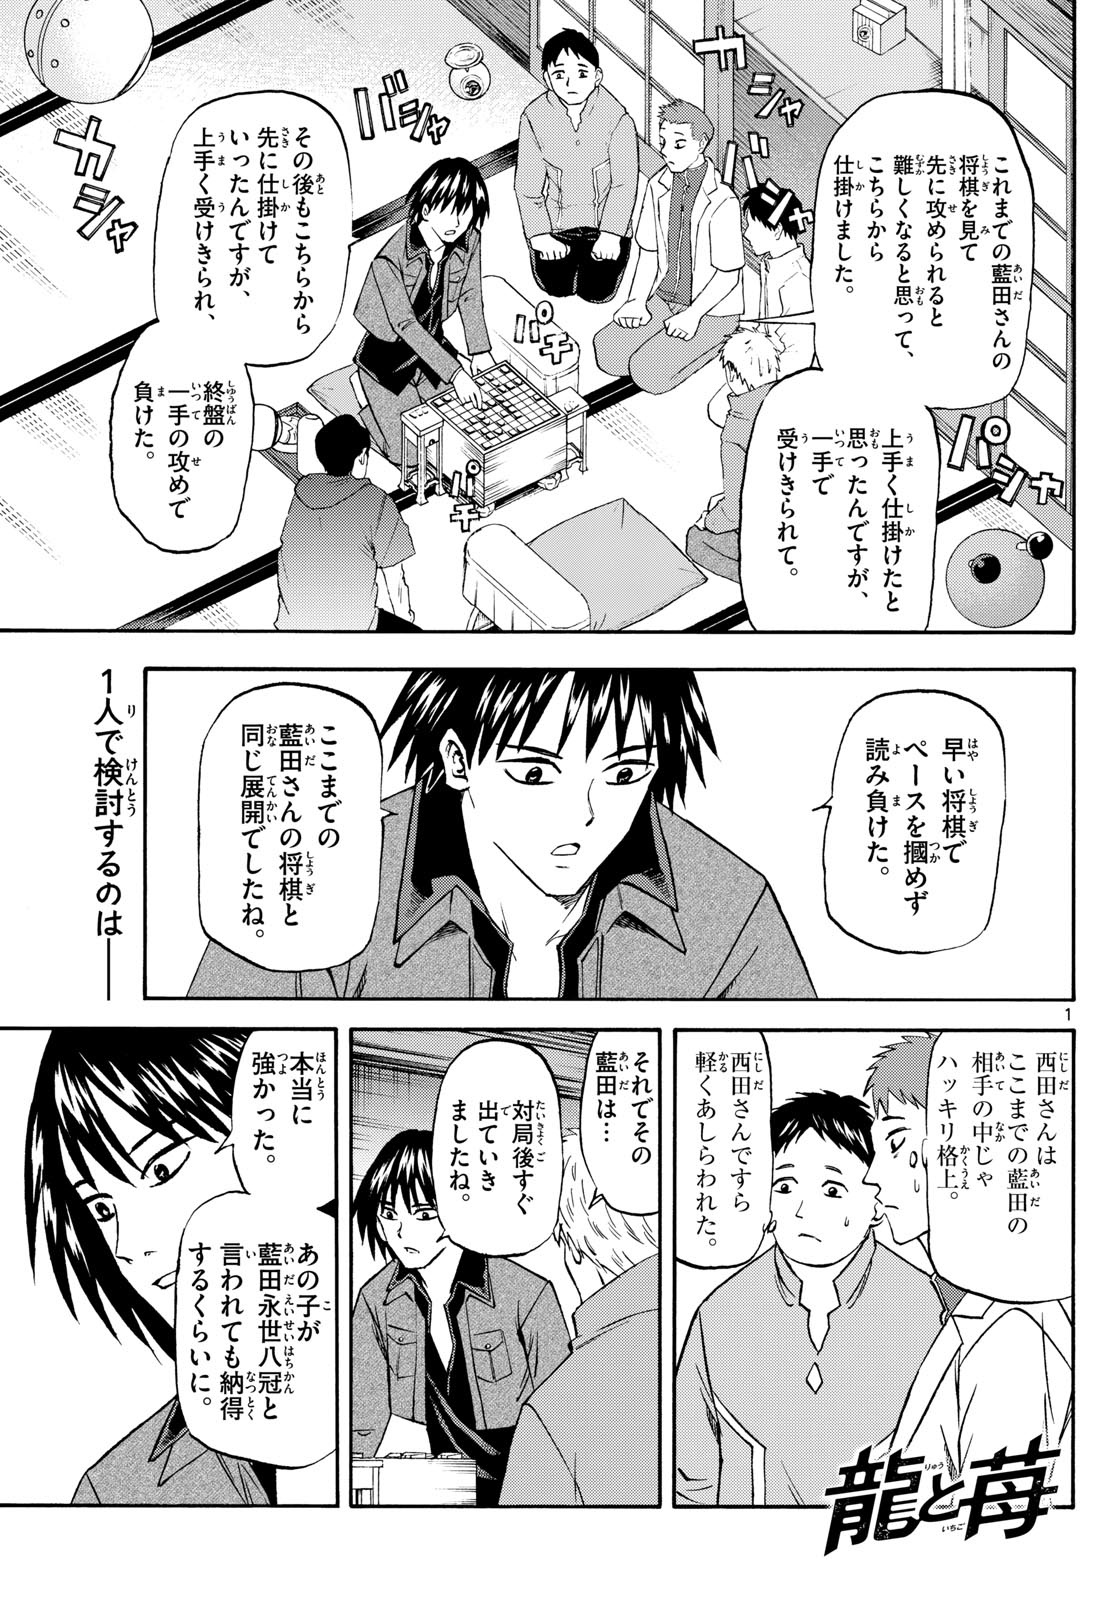 Tatsu to Ichigo - Chapter 195 - Page 1